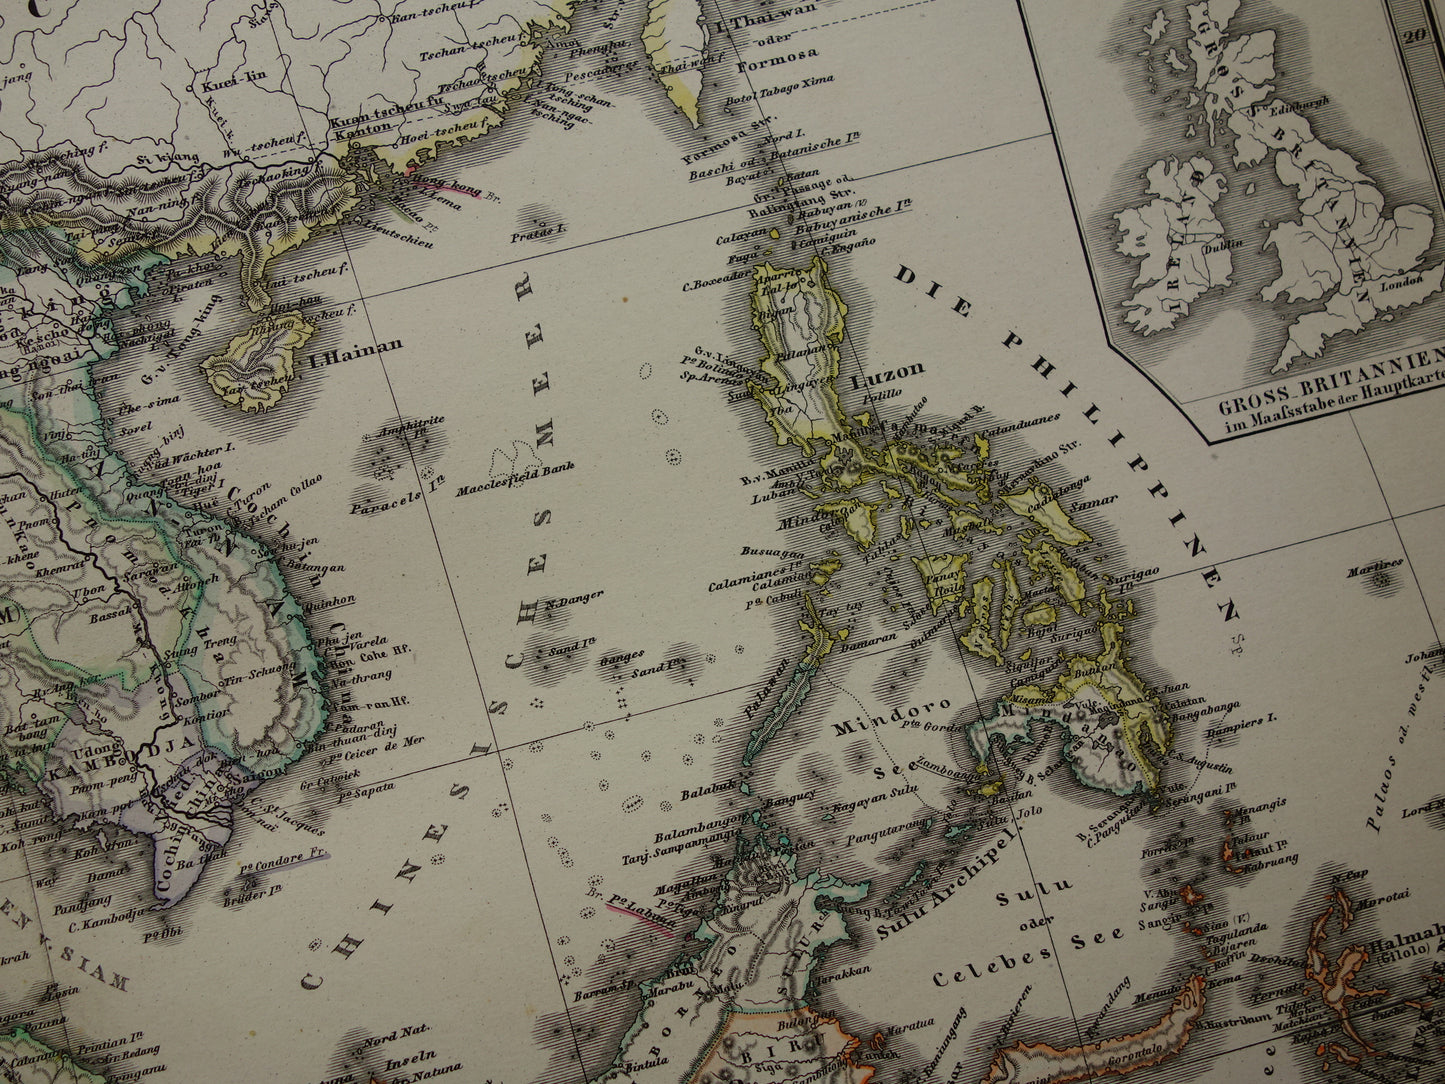 INDONESIË oude kaart van zuidoost Azië in 1878 originele antieke landkaart India Filipijnen Thailand Vietnam vintage poster